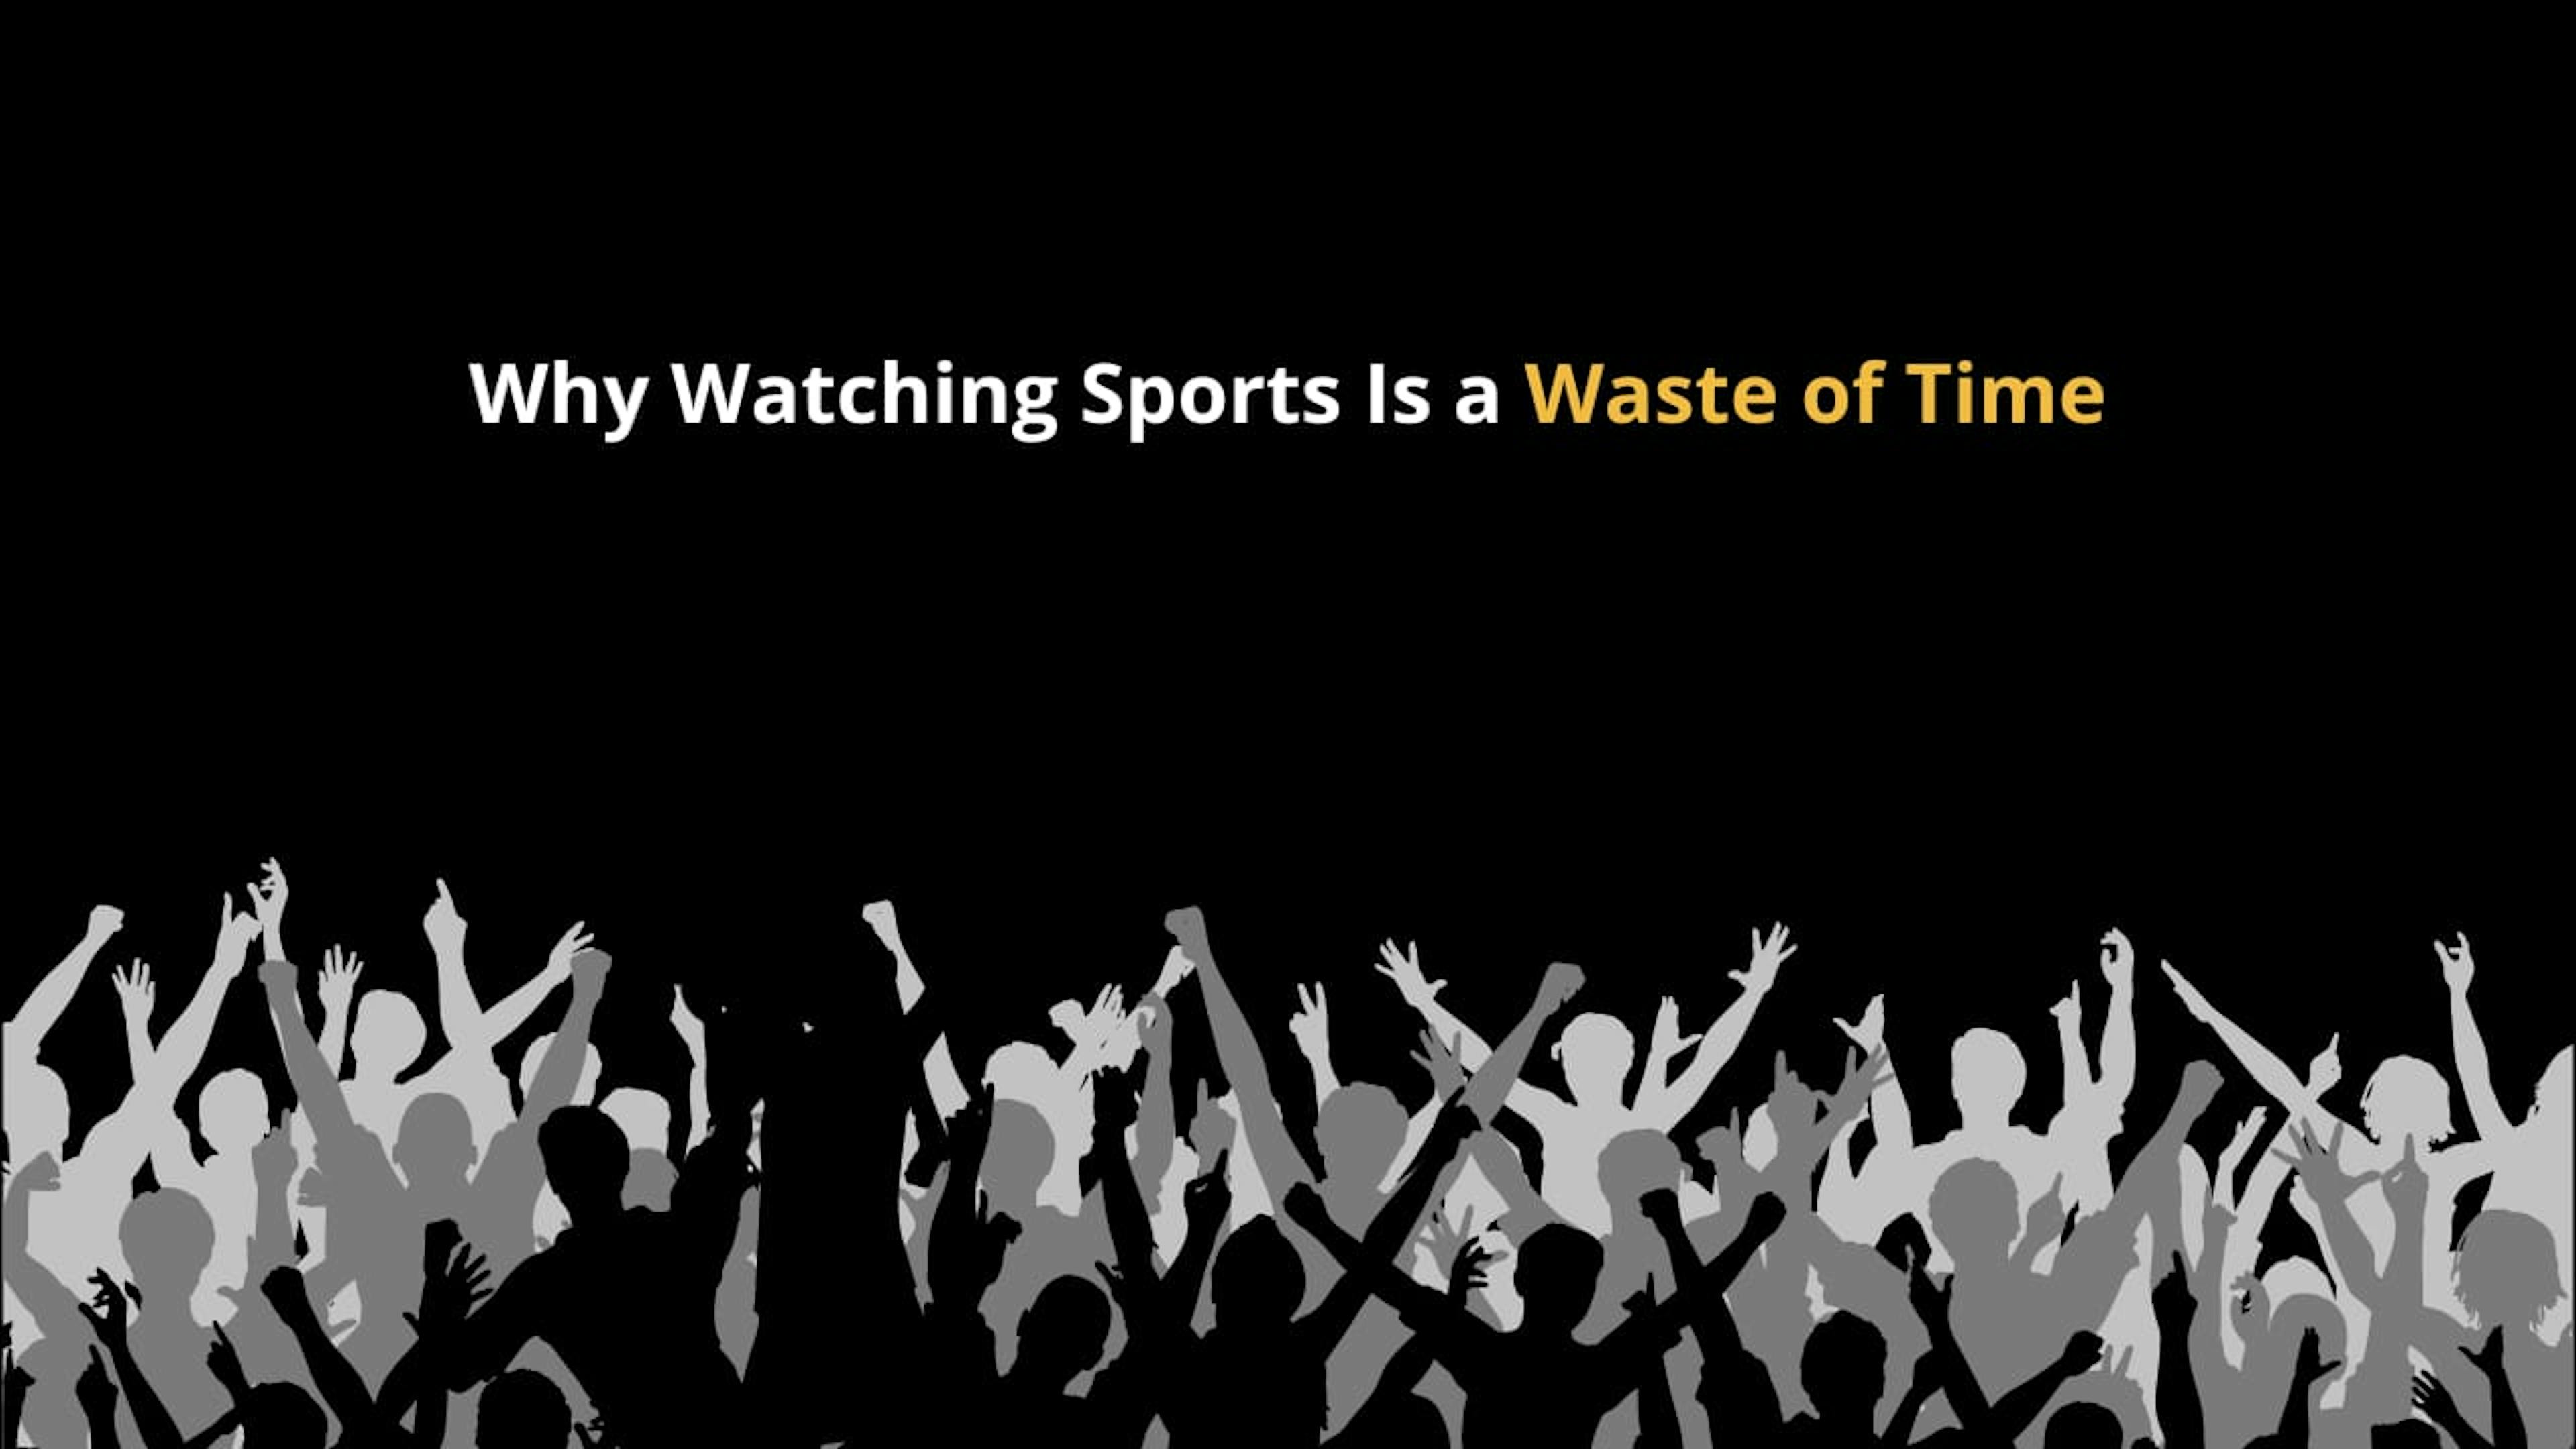 featured image - 不要浪费时间观看体育比赛